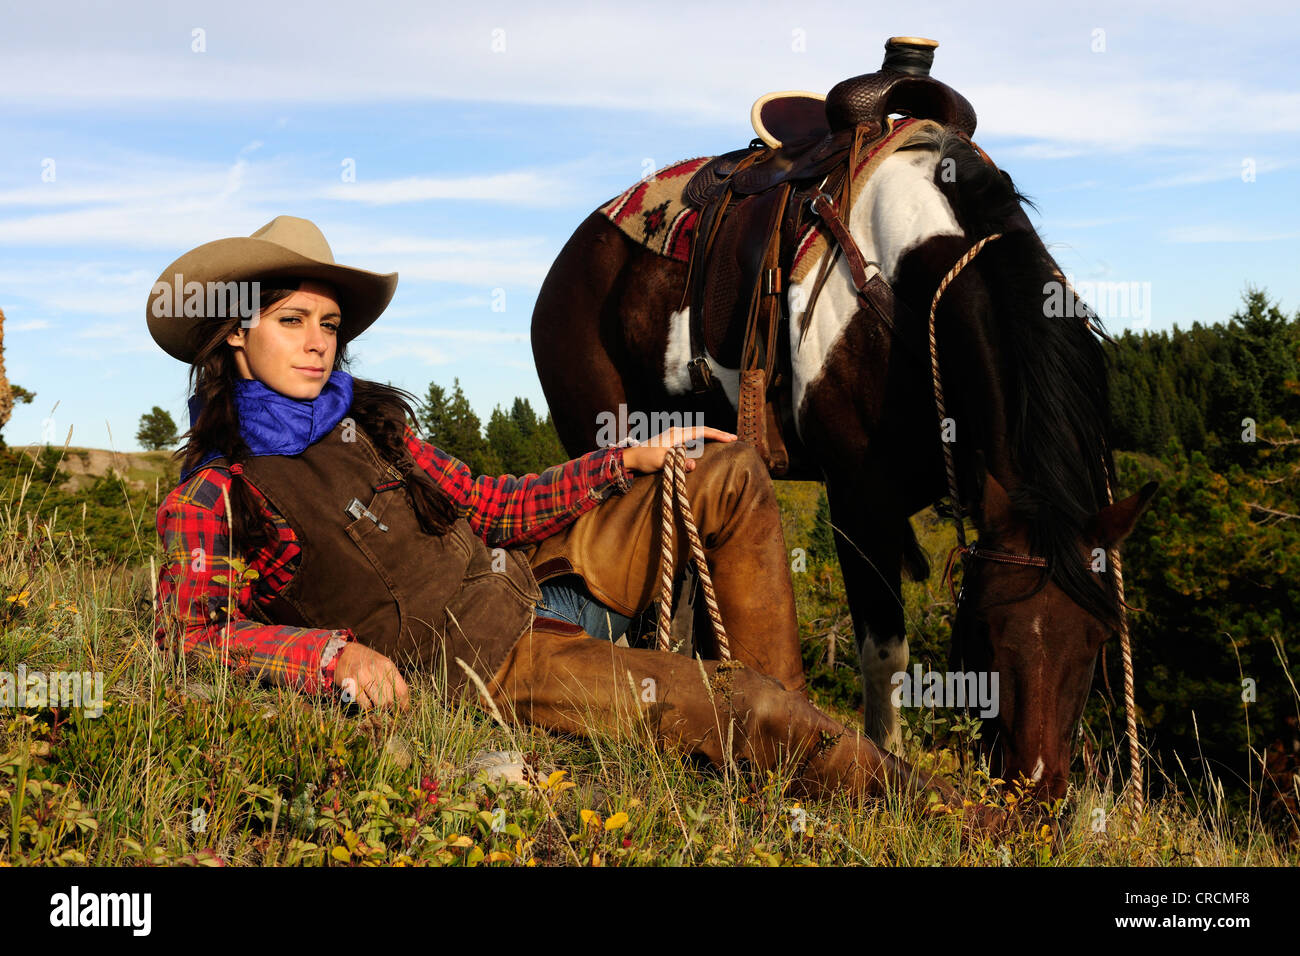 Cowgirl liegen in der Wiese, ihr Pferd stand neben ihr, Saskatchewan, Kanada Stockfoto